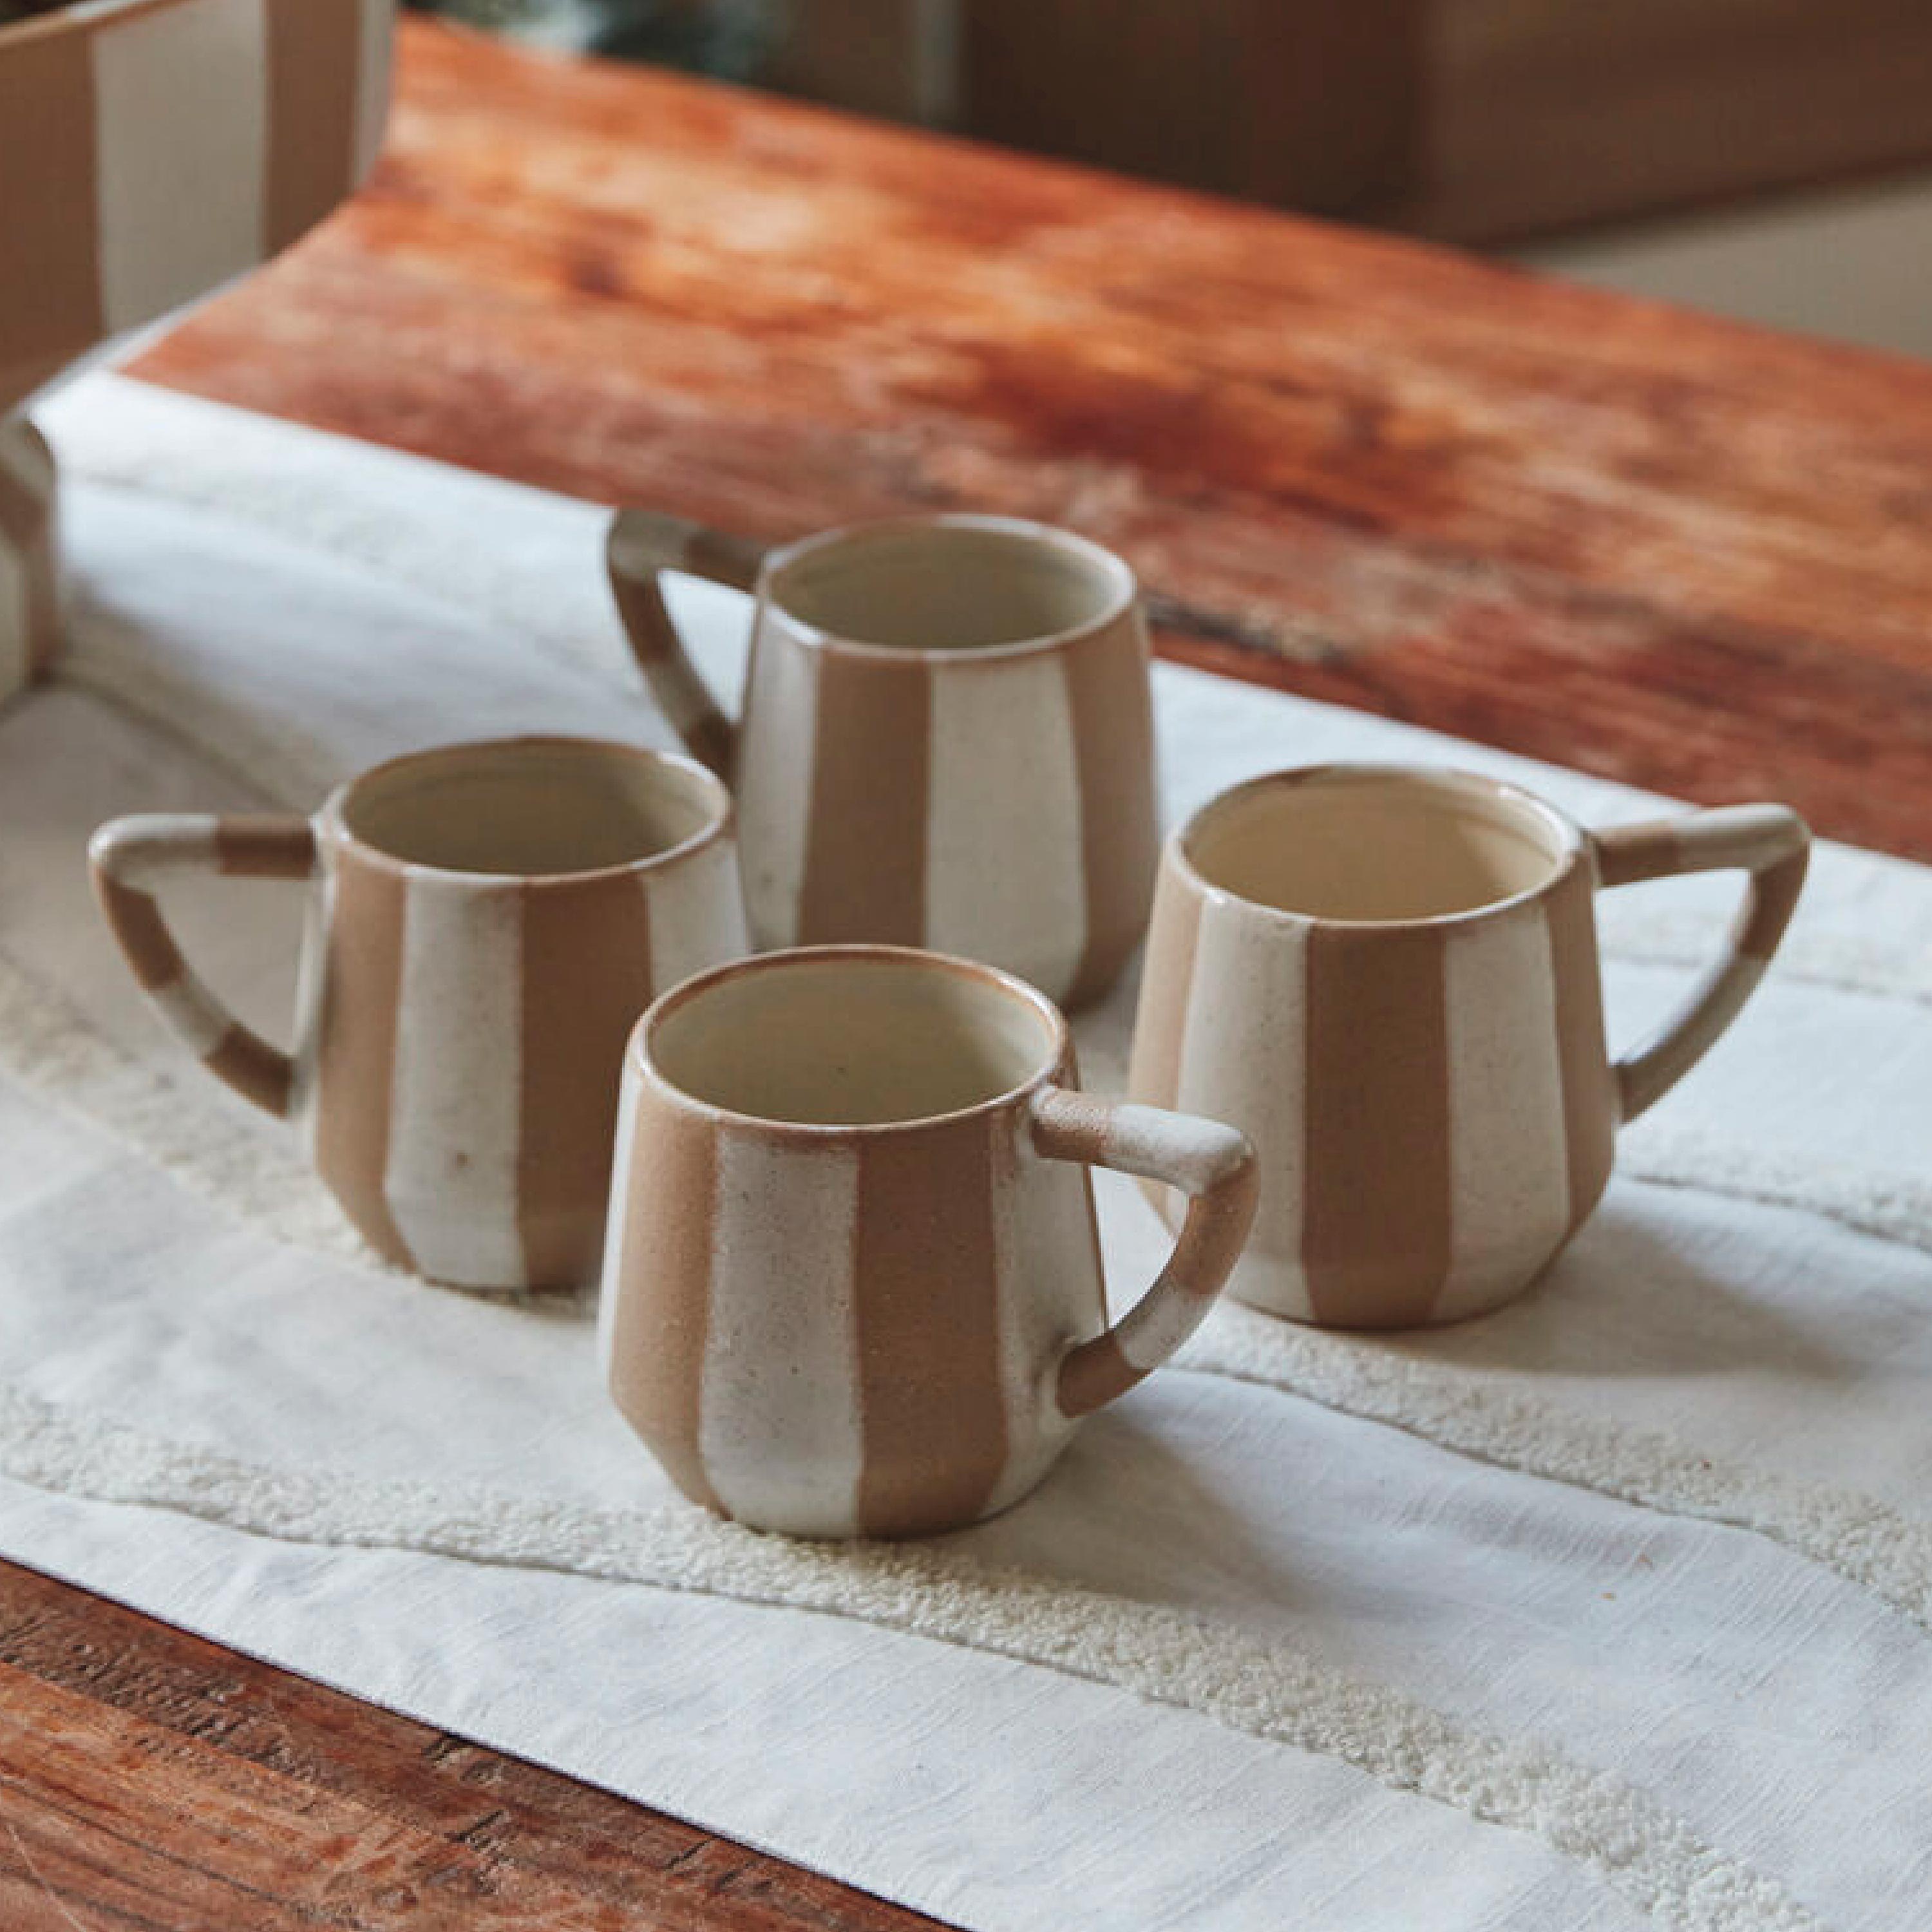 Botera Ceramic Striped Mug, Set of 4